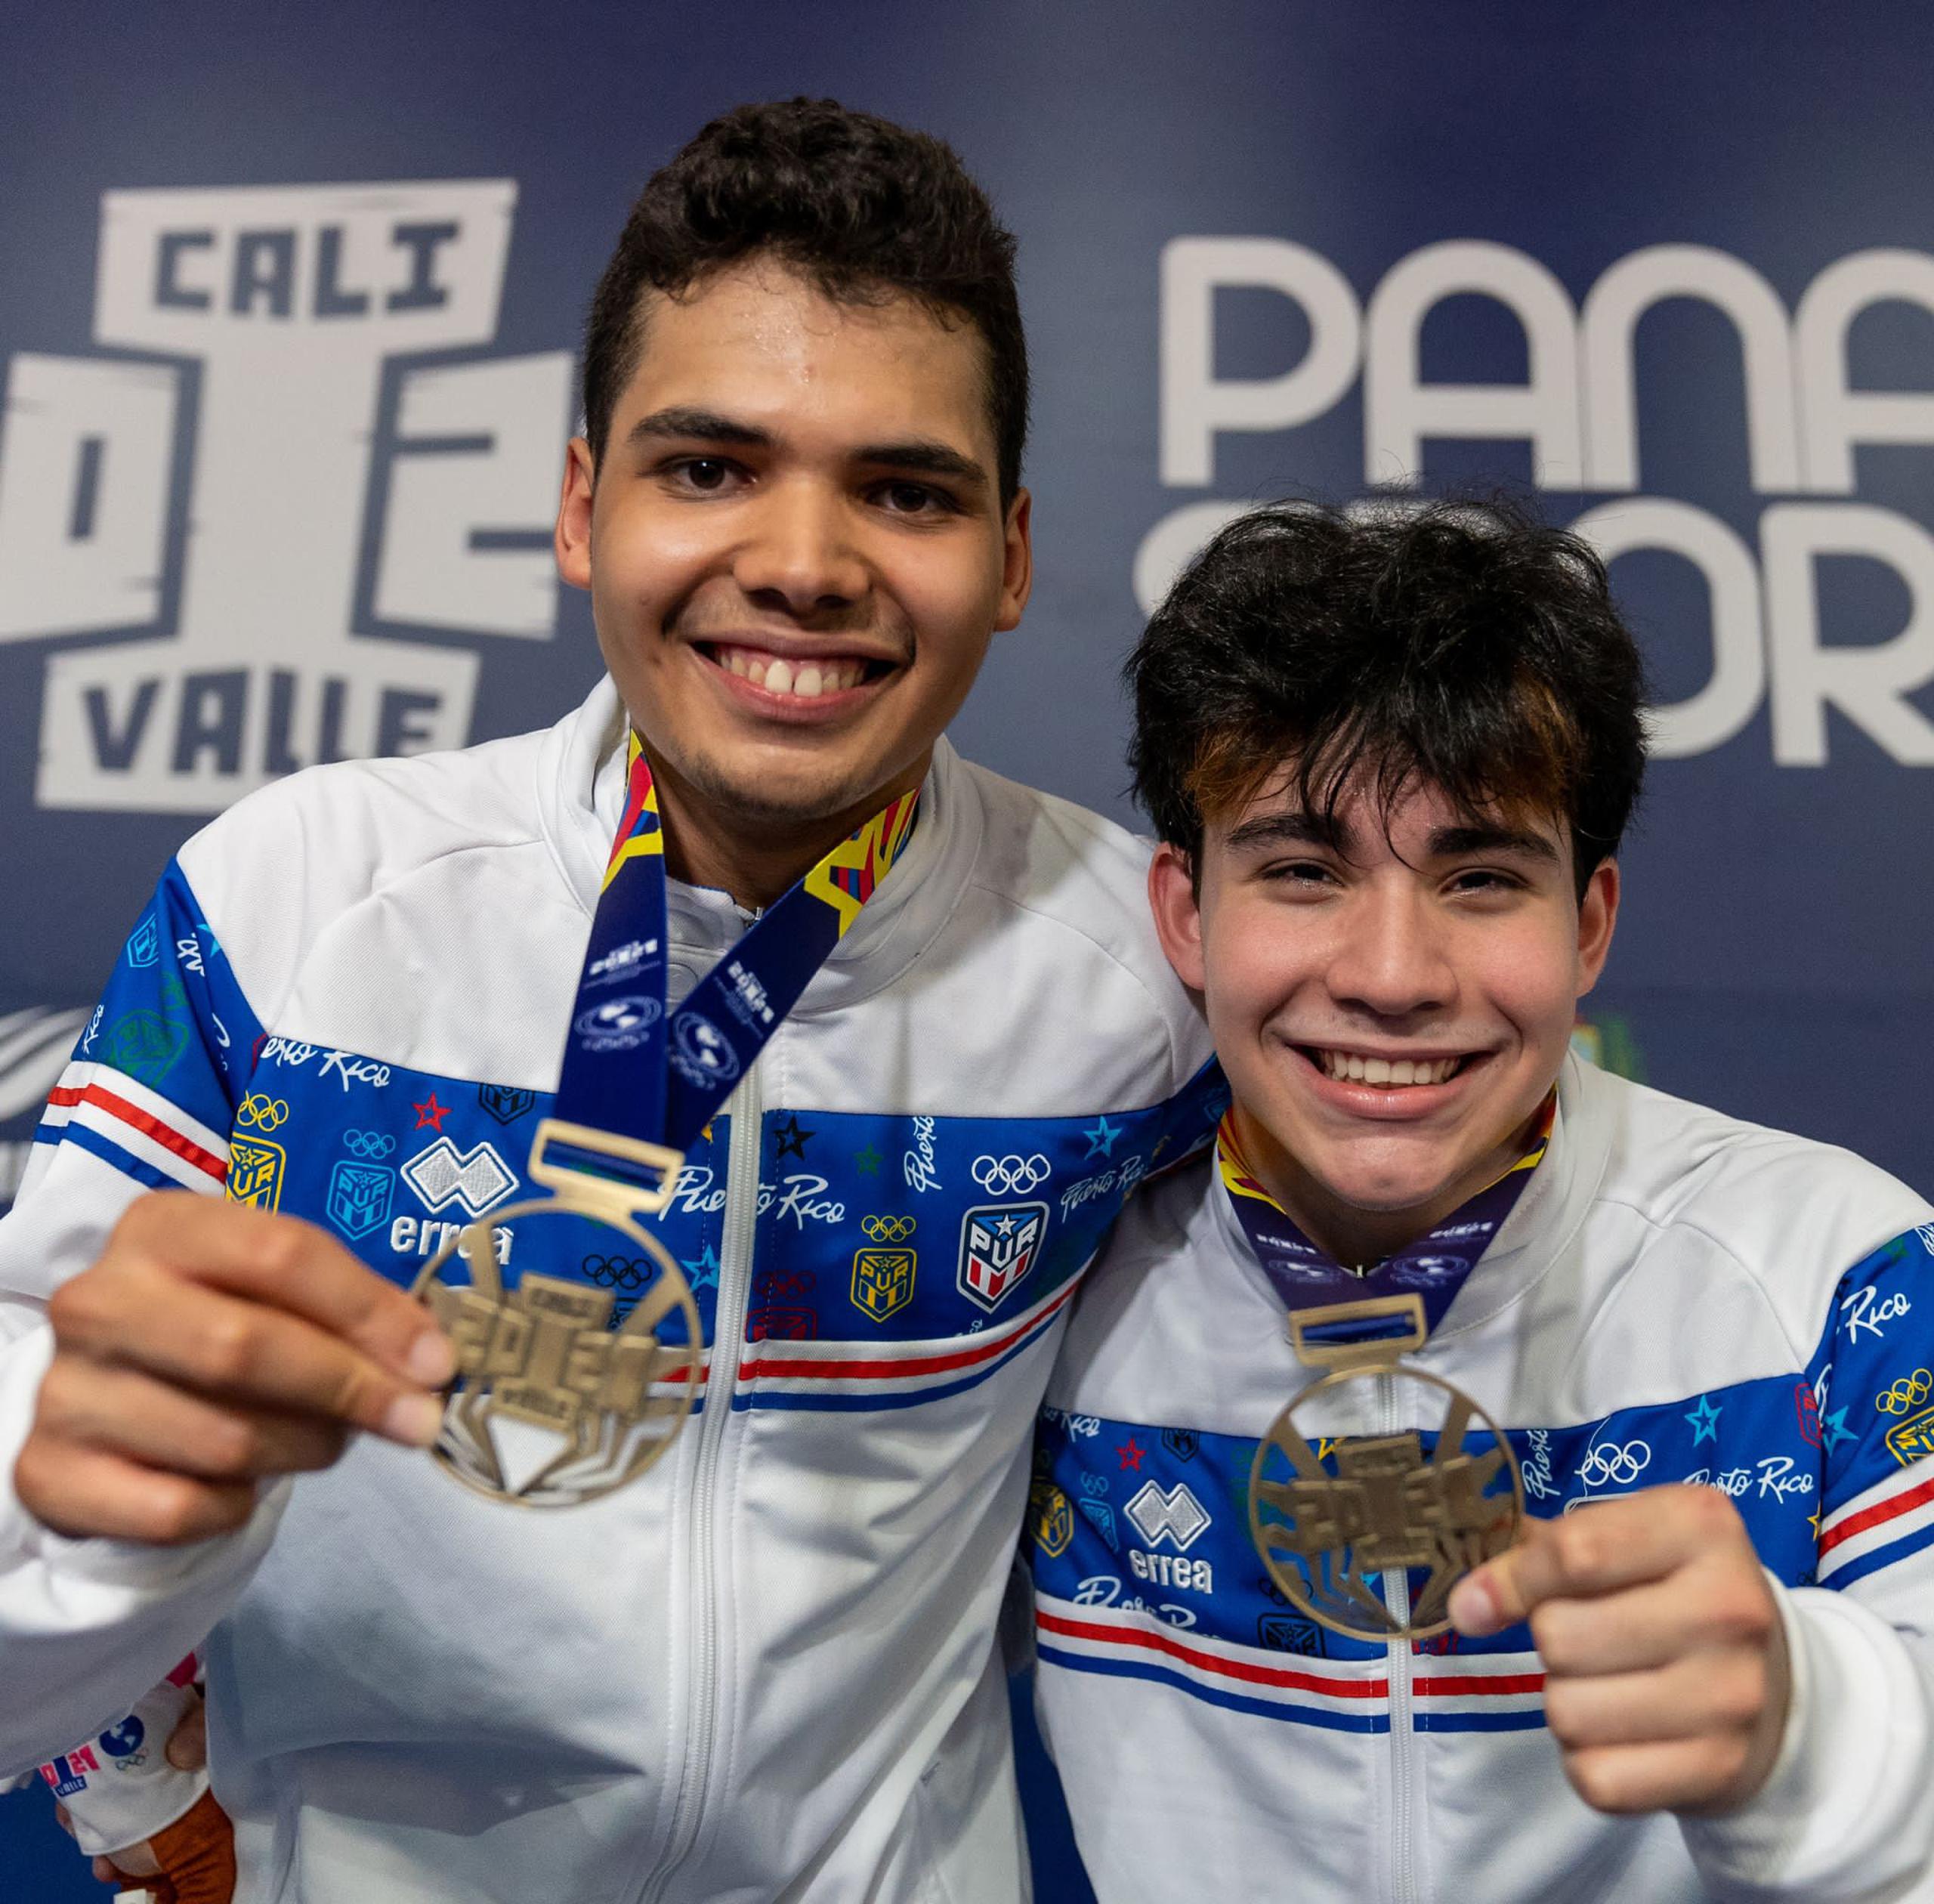 Los tenimesistas boricuas Ángel Naranjo, a la izquierda, y Derek Valentín, le dieron a Puerto Rico su quinta medalla de oro en los Juegos Panamericanos Junior de Colombia al dominar la modalidad de dobles de la rama masculina.